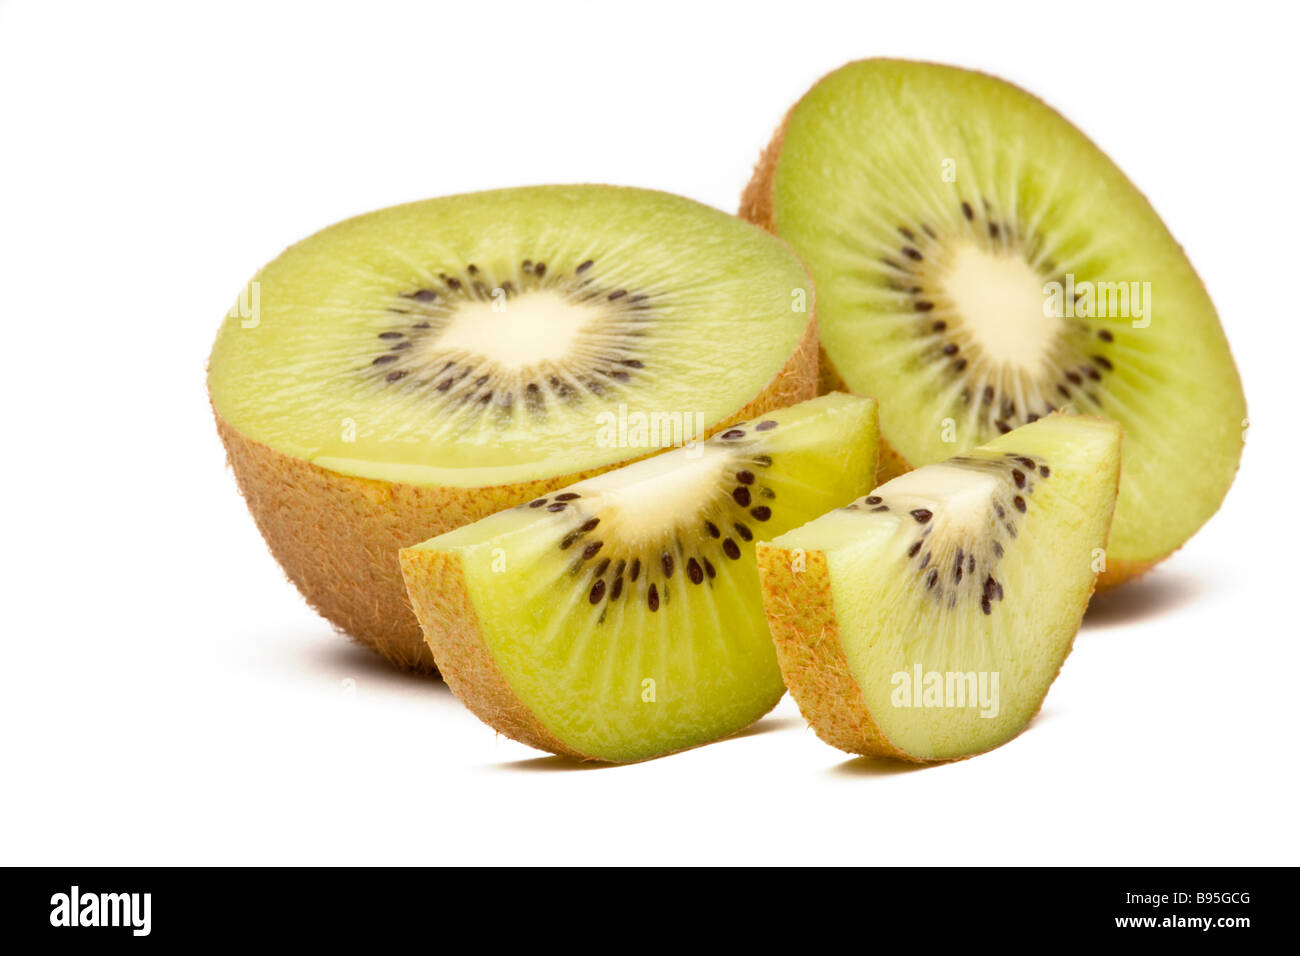 Green kiwi or kiwifruit halved and sliced Stock Photo